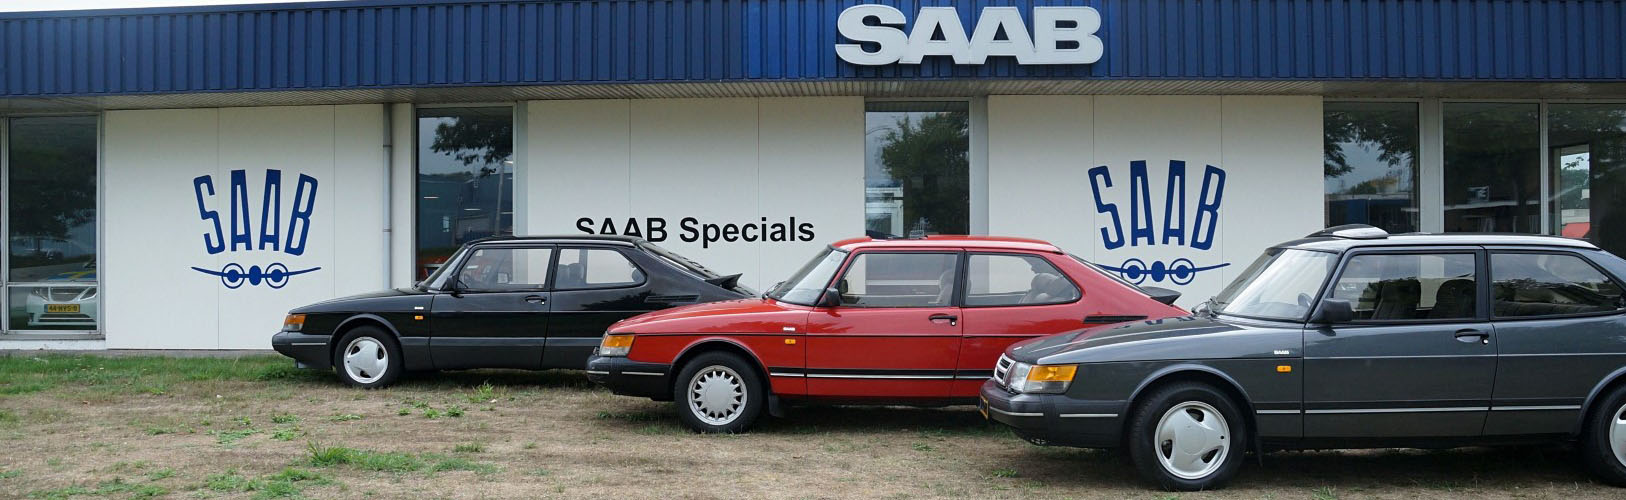 Timmer - Saab Specials - Visuals